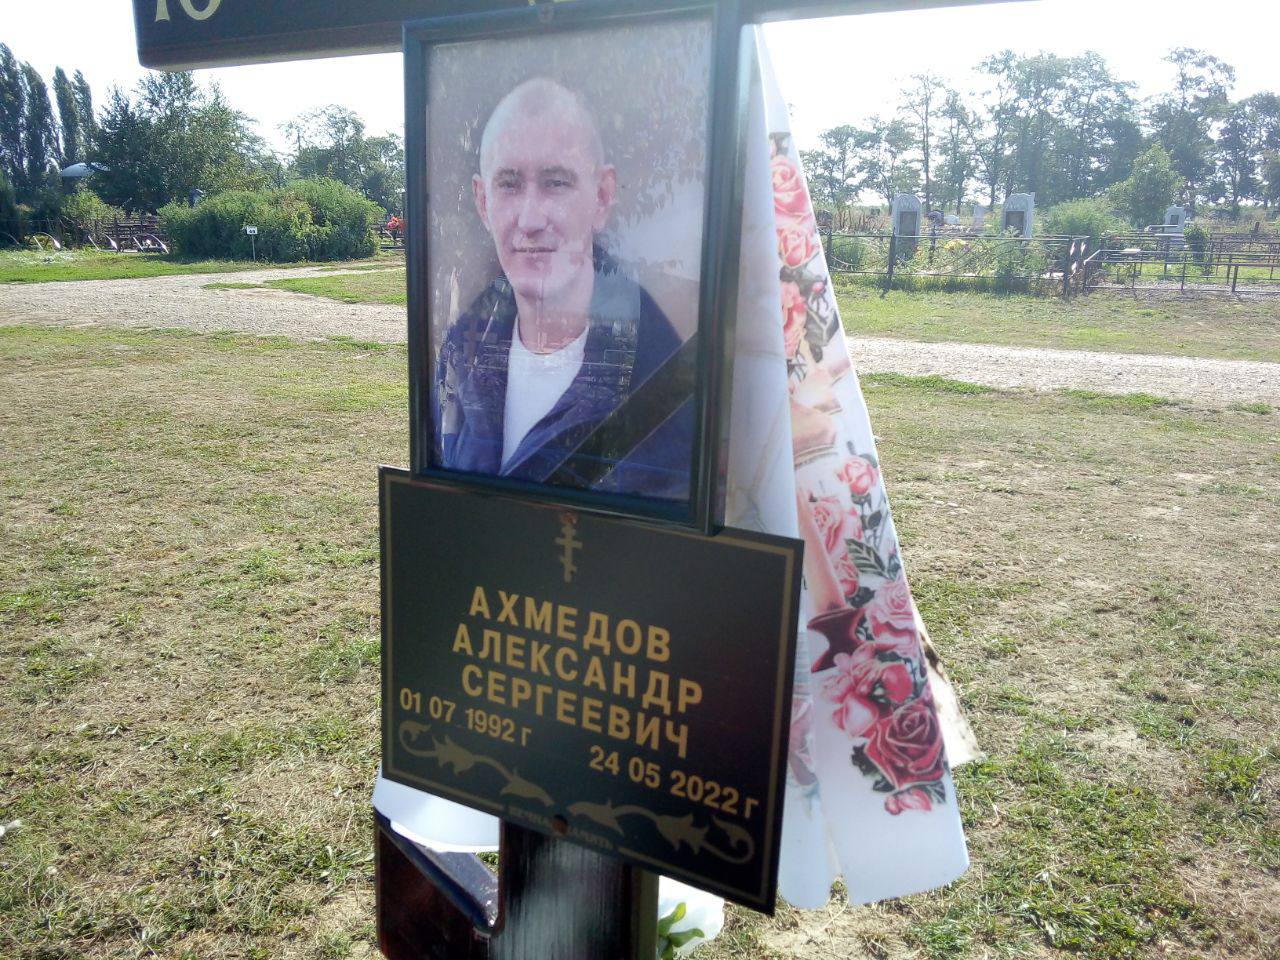 Ахмедов Александр Сергеевич погиб 24.05.2022 из региона Неизвестно, 